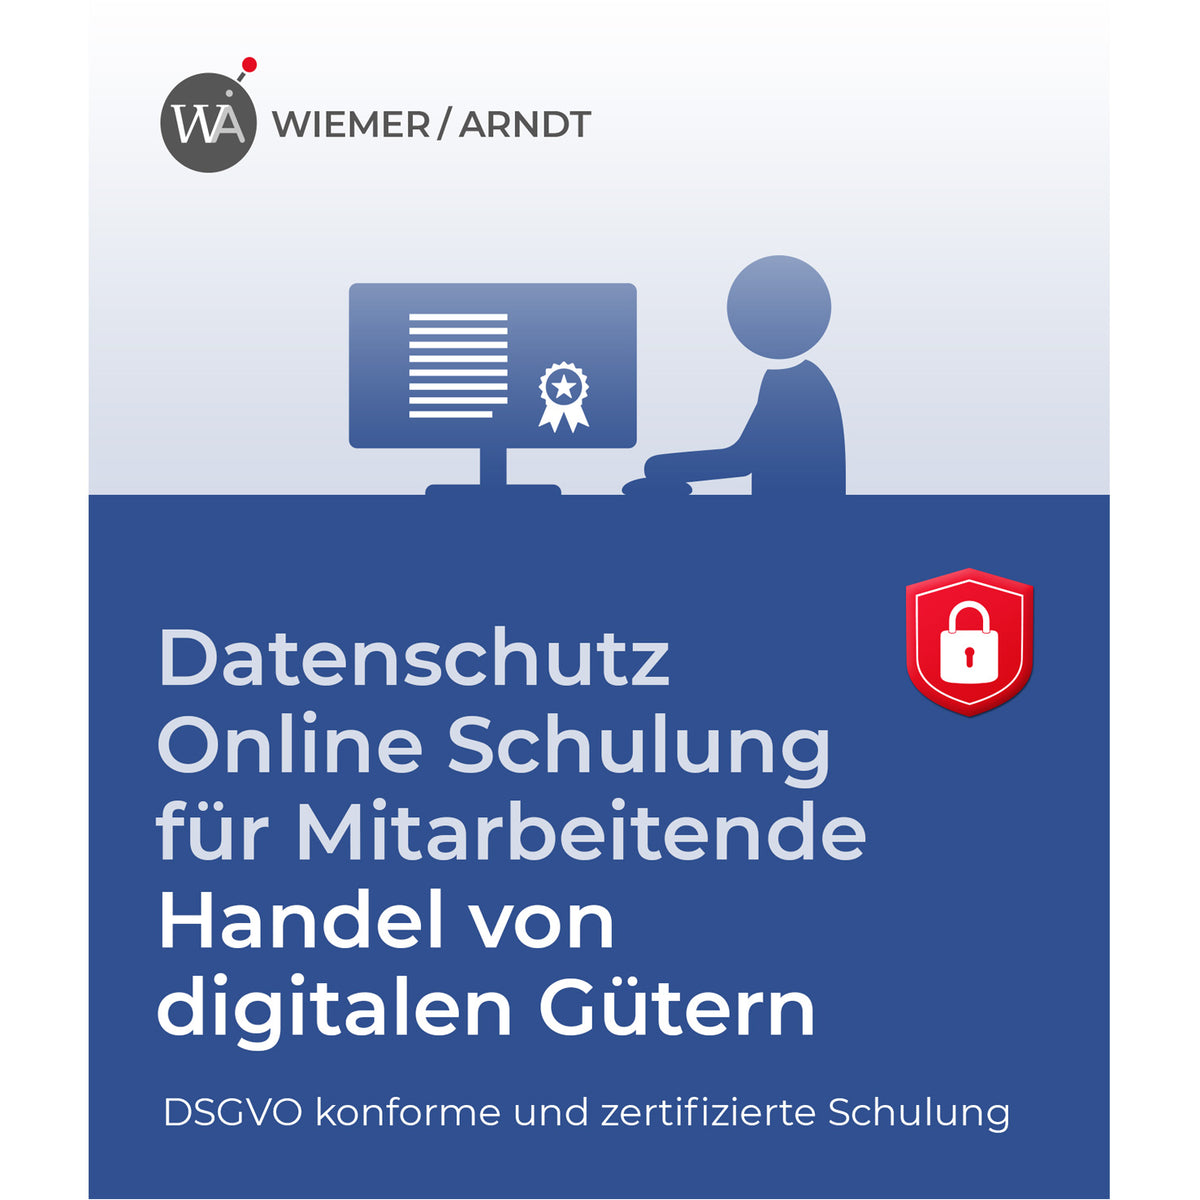 Datenschutz Online Schulung für Mitarbeiter im Handel von digitalen Gütern